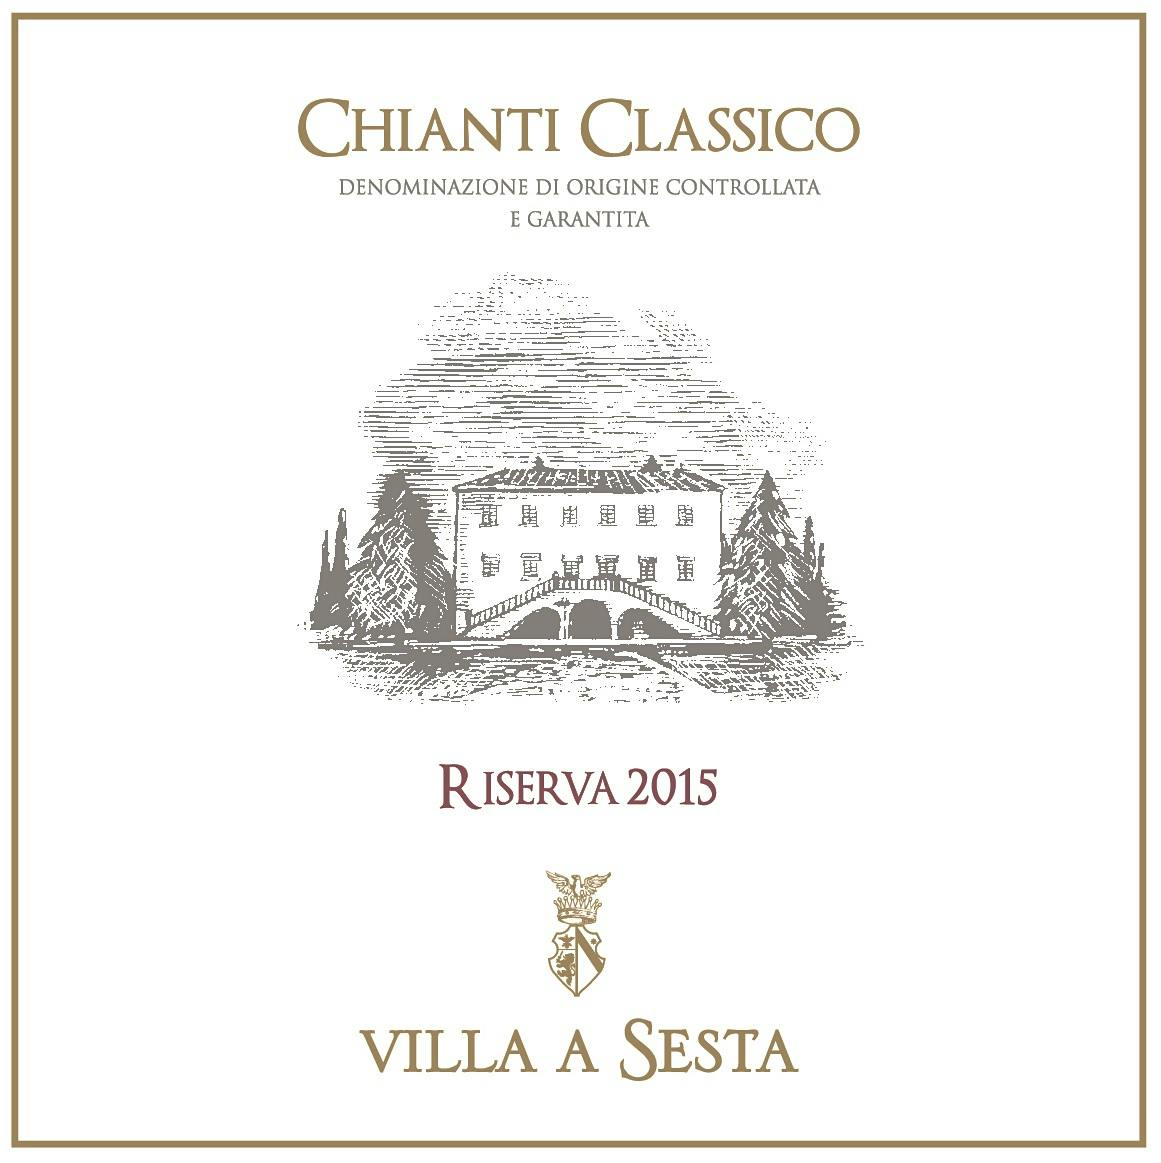 Label for Villa a Sesta